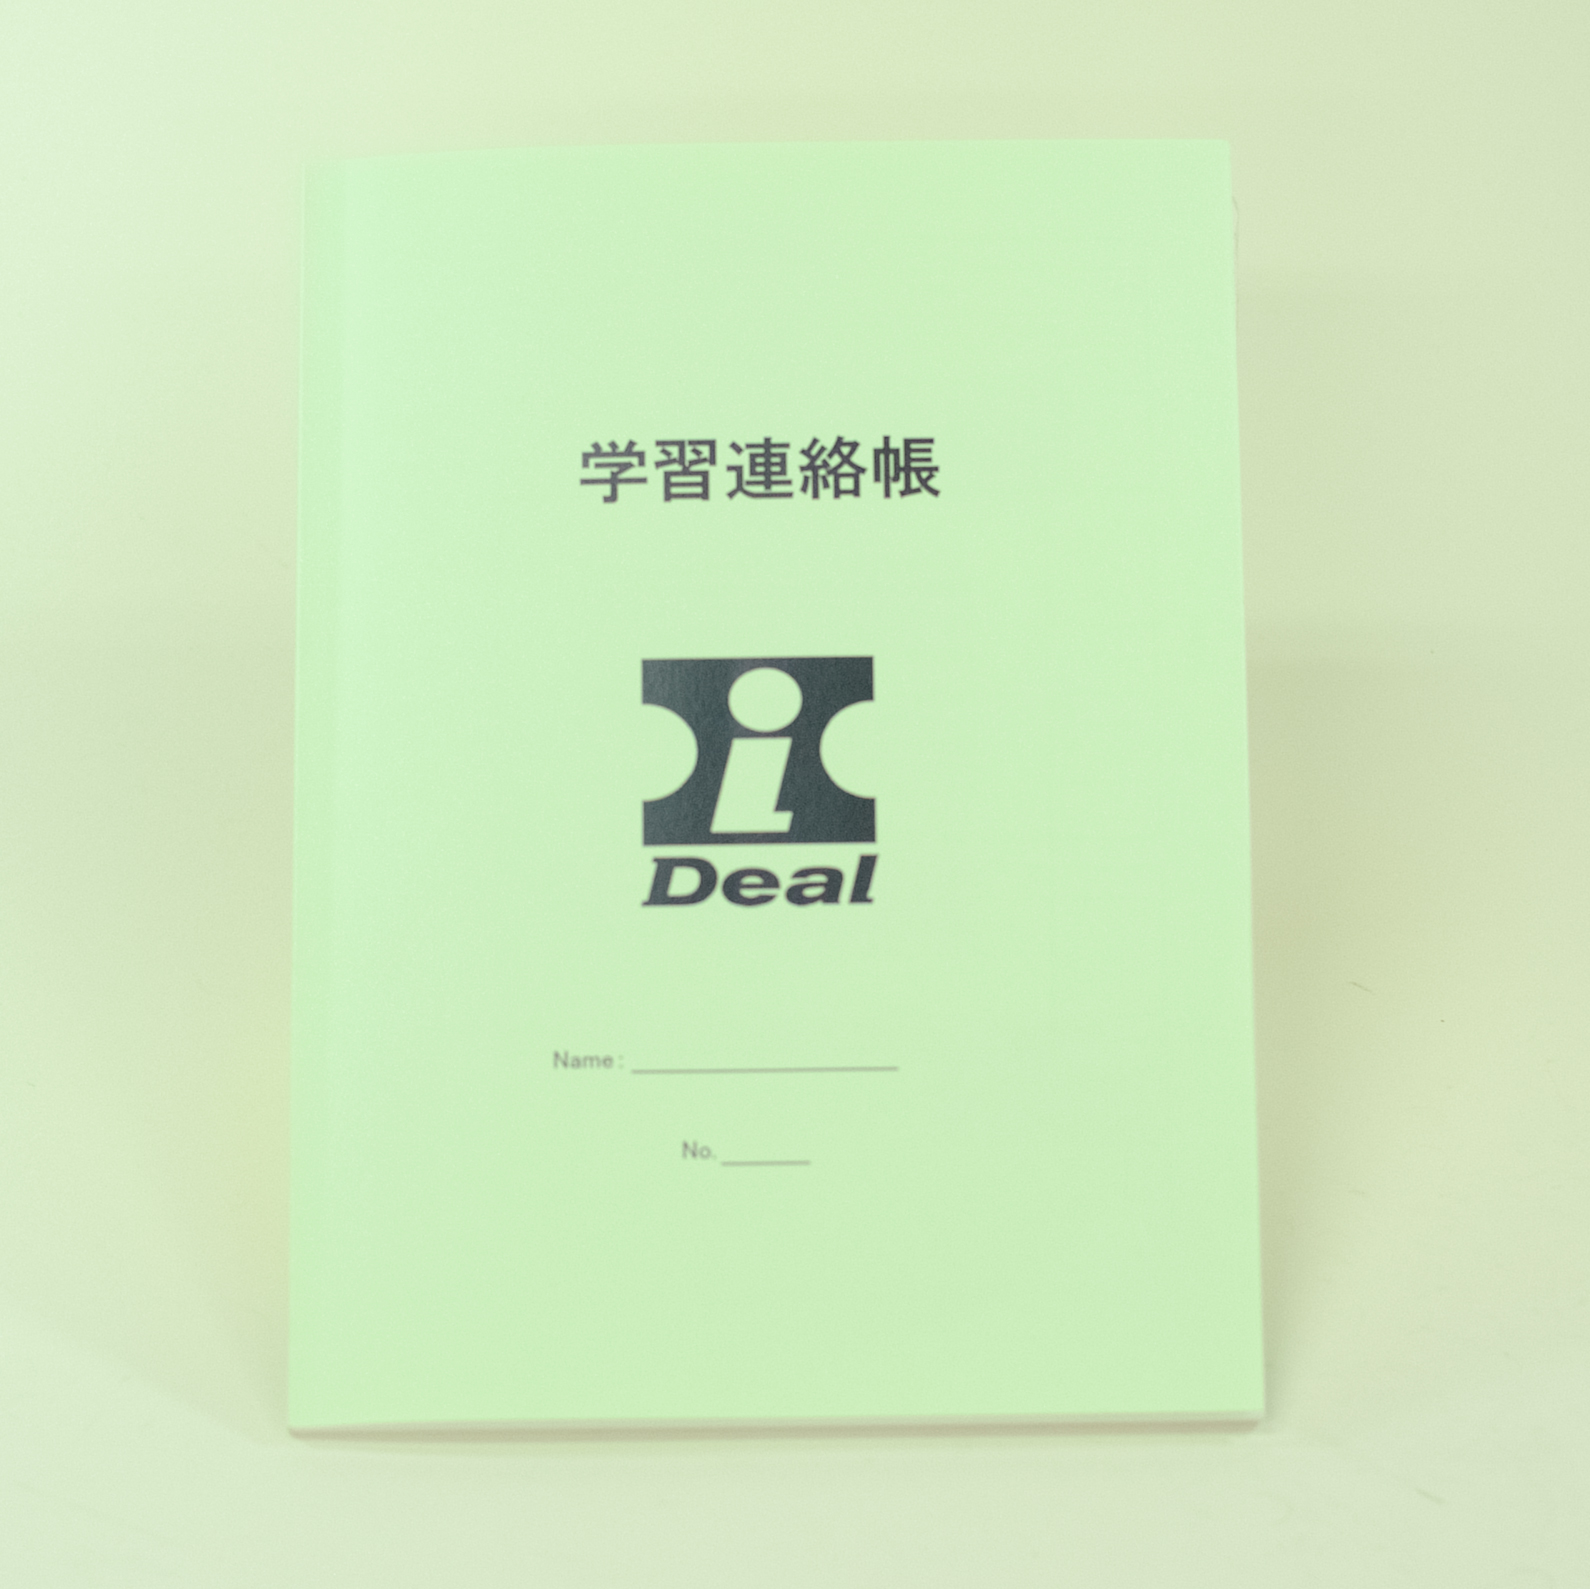 「個別指導塾アイディール 様」製作のオリジナルノート